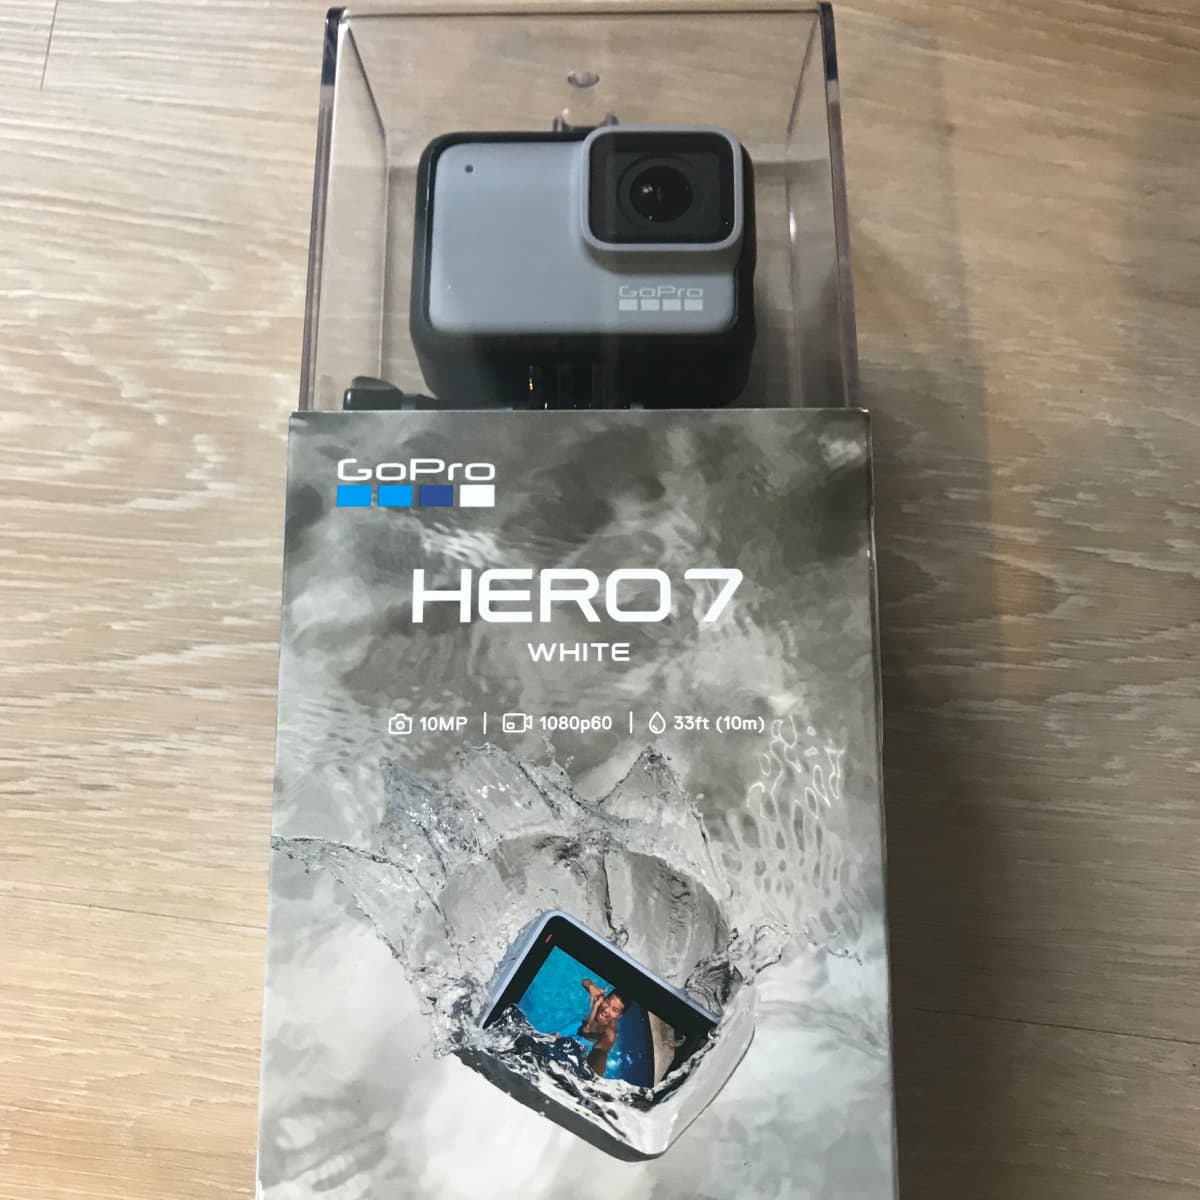 Should I buy a GoPro Hero 7 White?